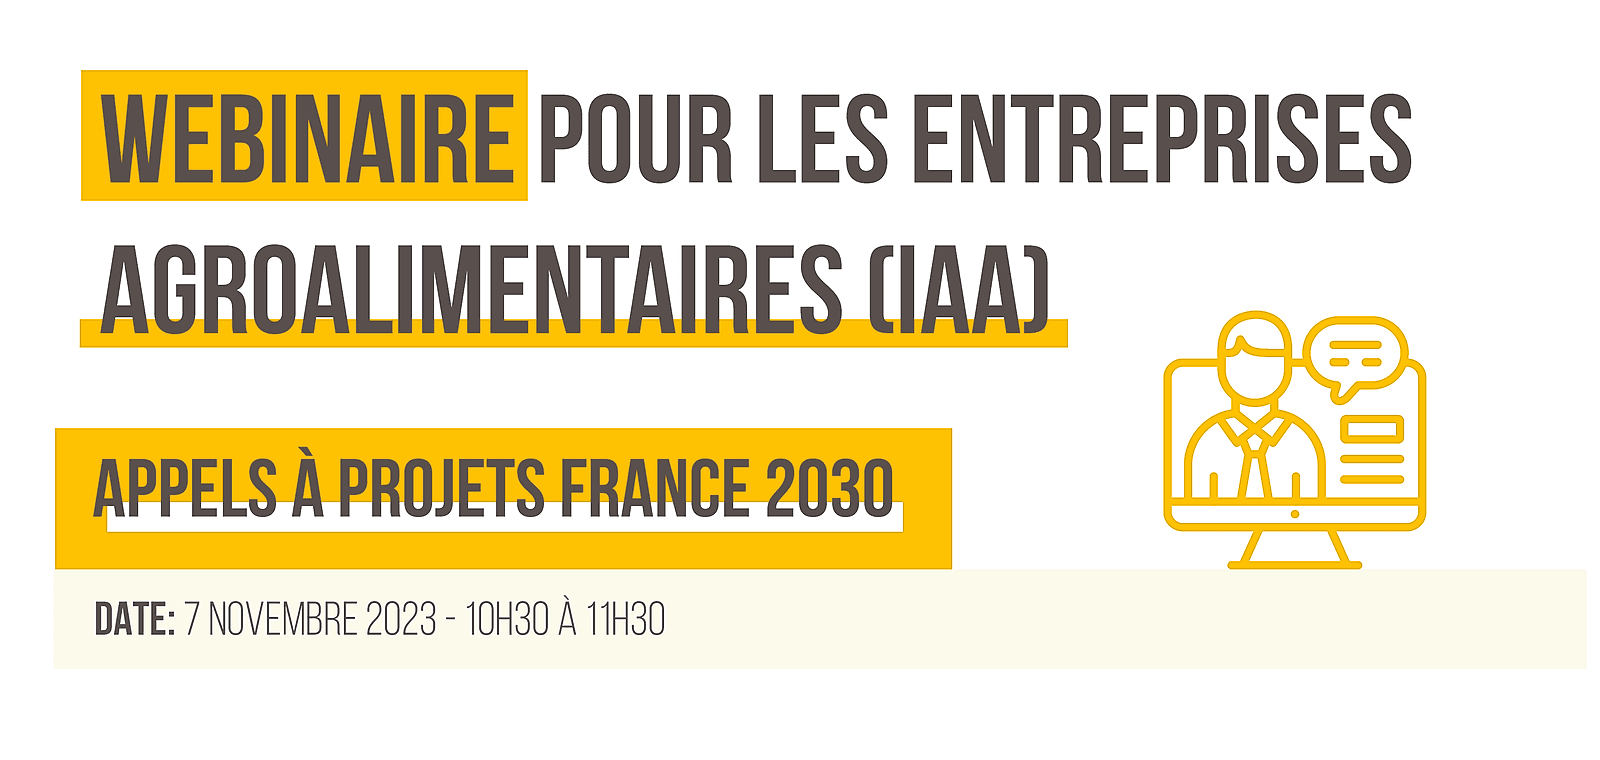 Présentation des Appel à Projets (AAP) France 2030 à destination des Industries Agroalimentaires